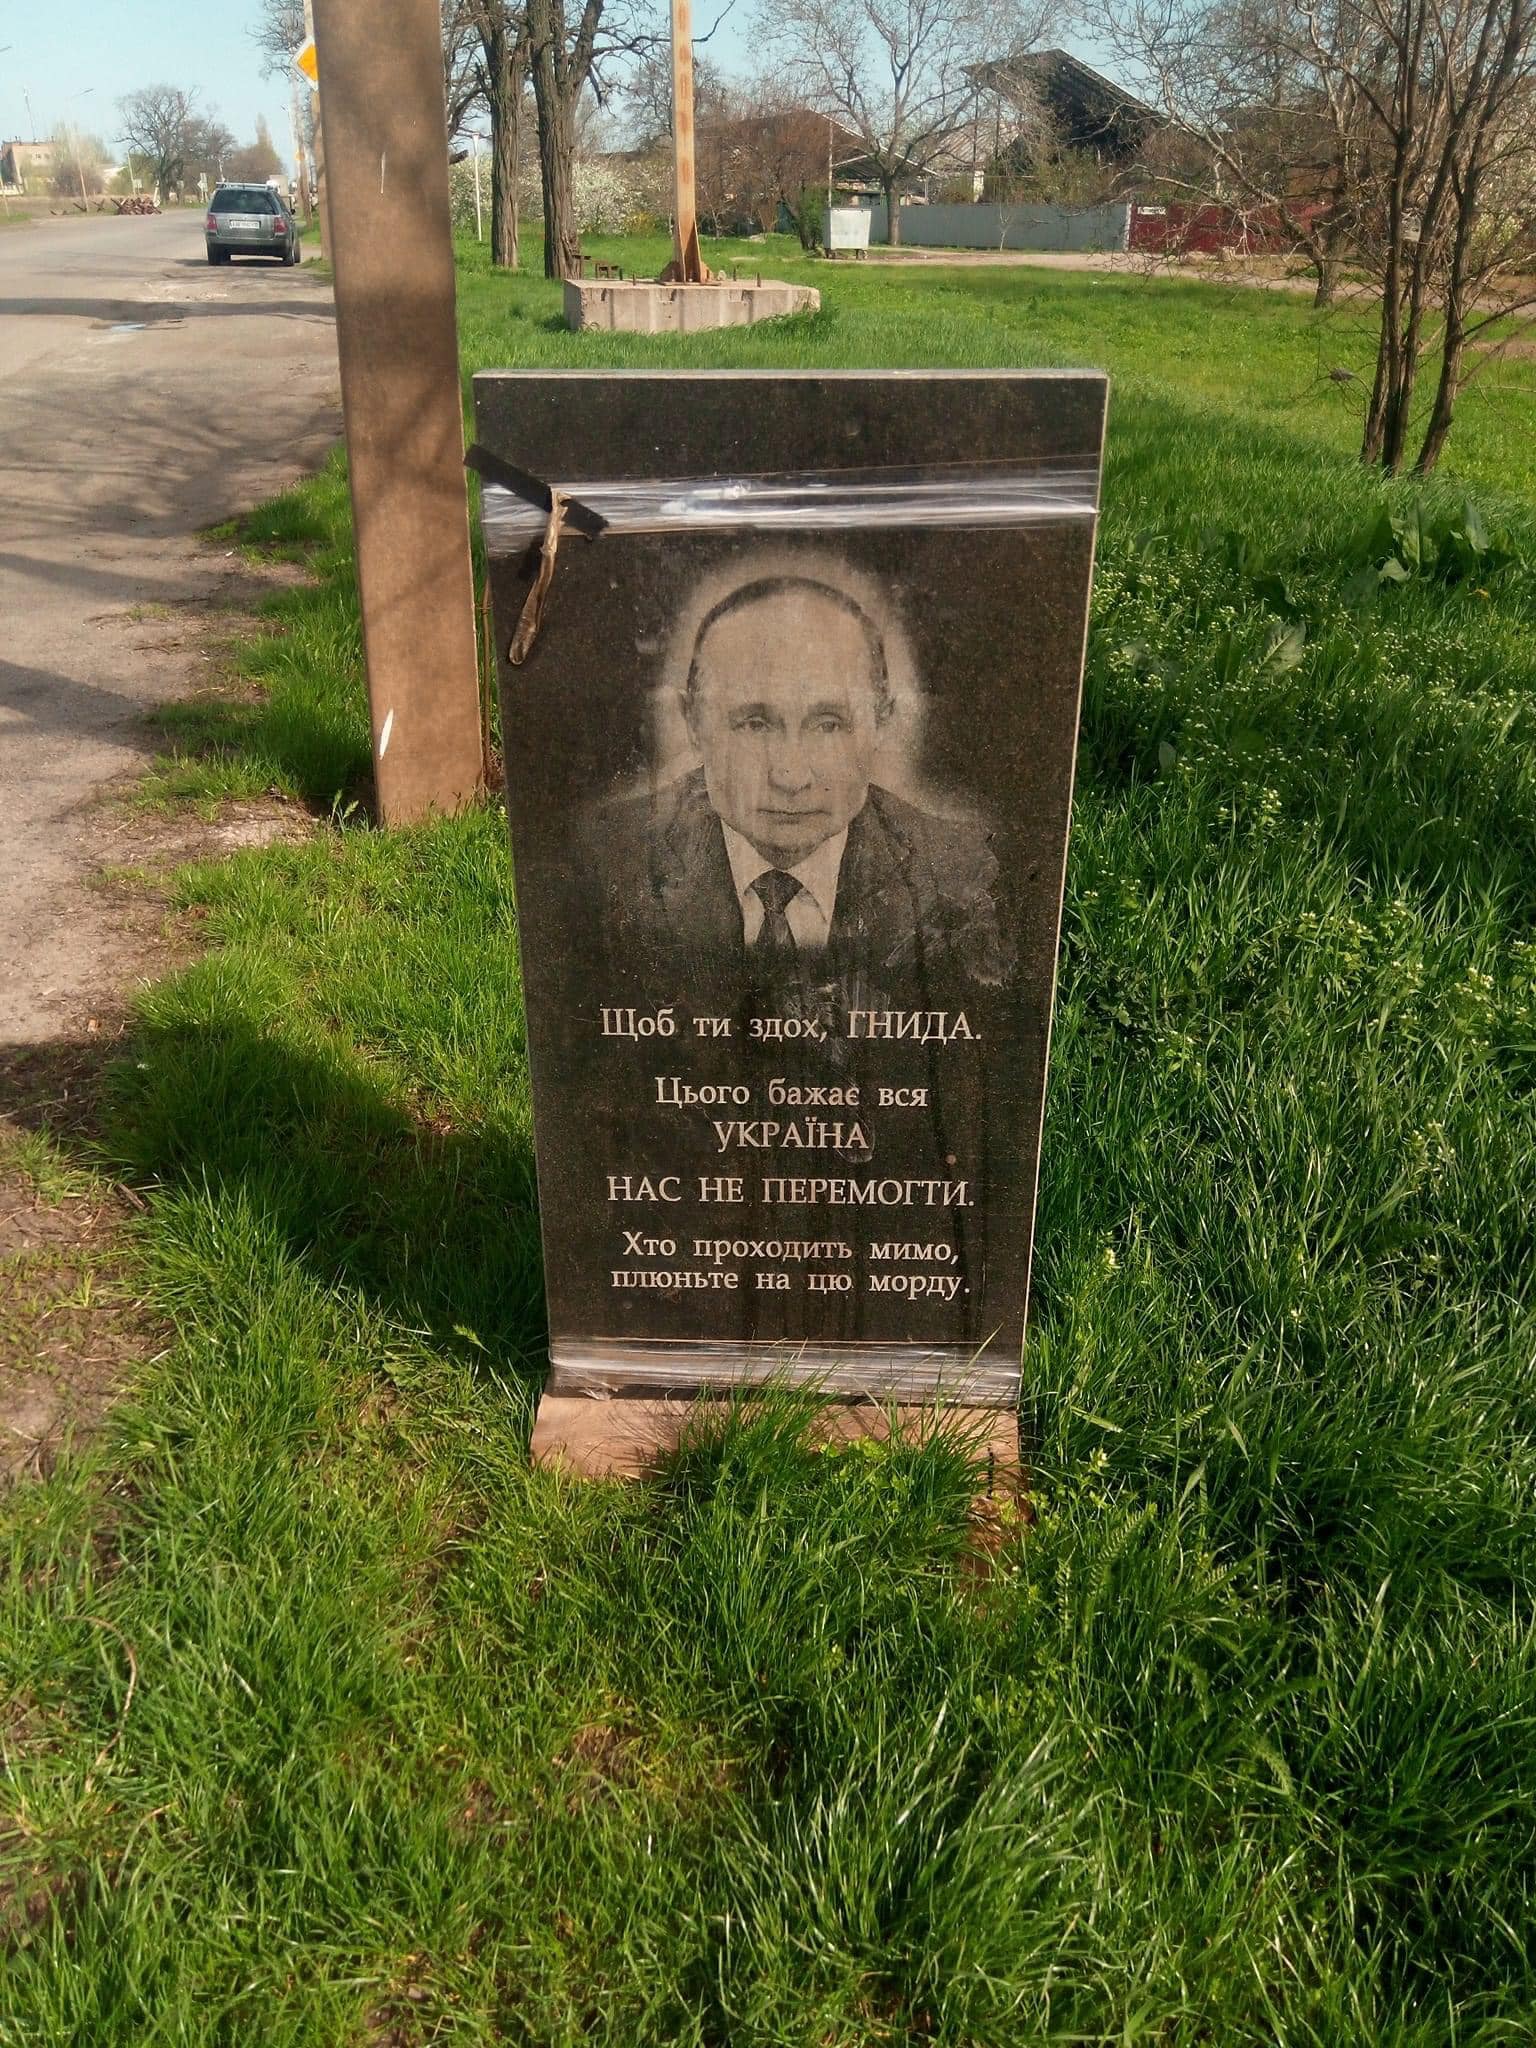 "Плюньте в морду": у Нікополі встановили "могильну плиту" Путіну